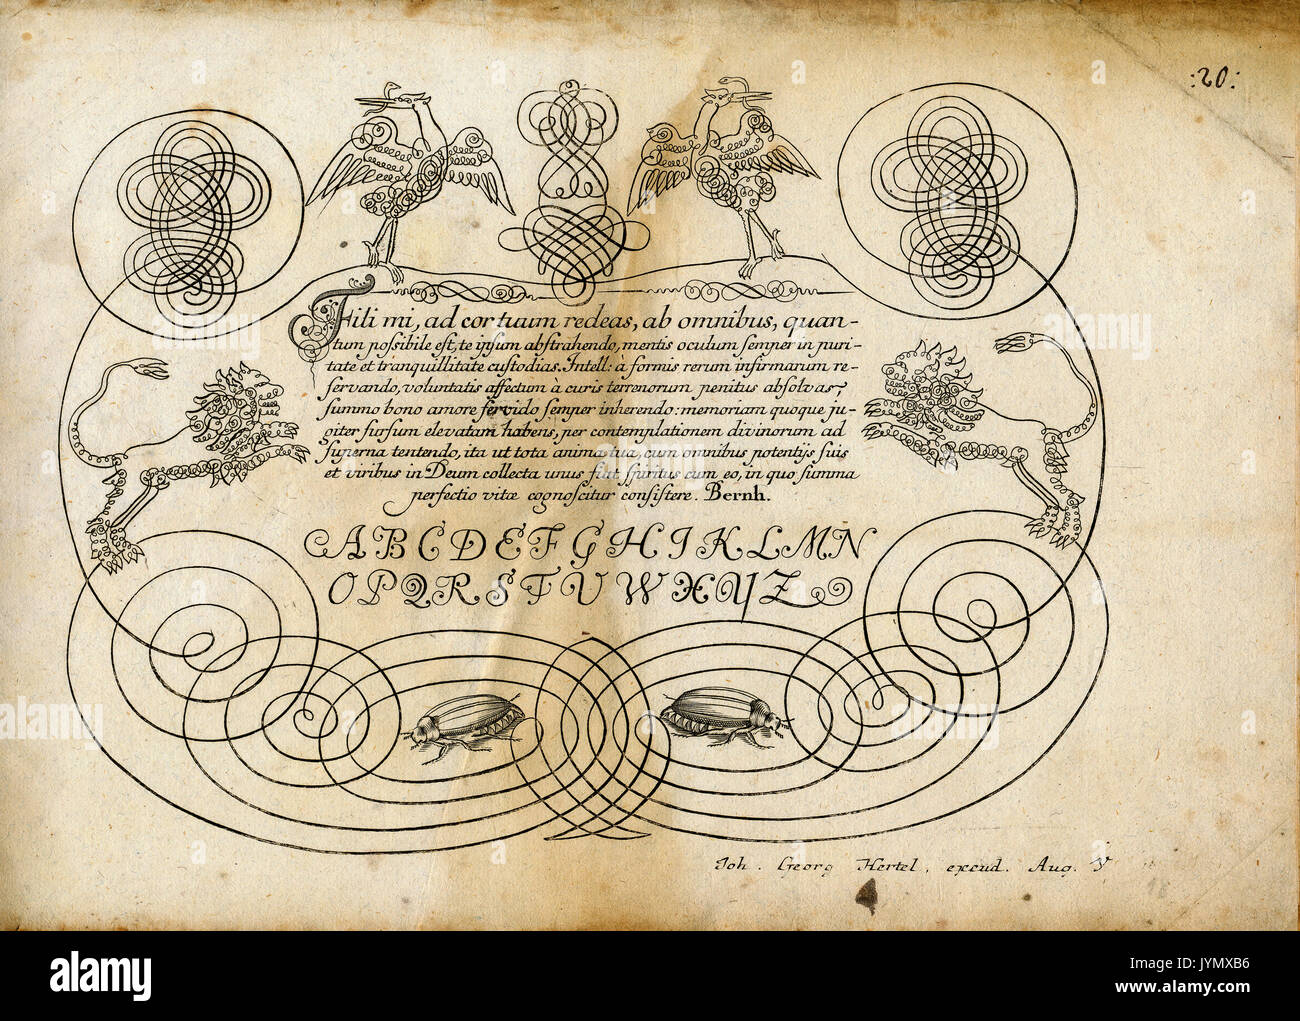 Ecriture - dimensions par Johann Georg Hertel - éditeur et graveur allemand, 1700 - 1775, Augsburg, Allemagne Banque D'Images